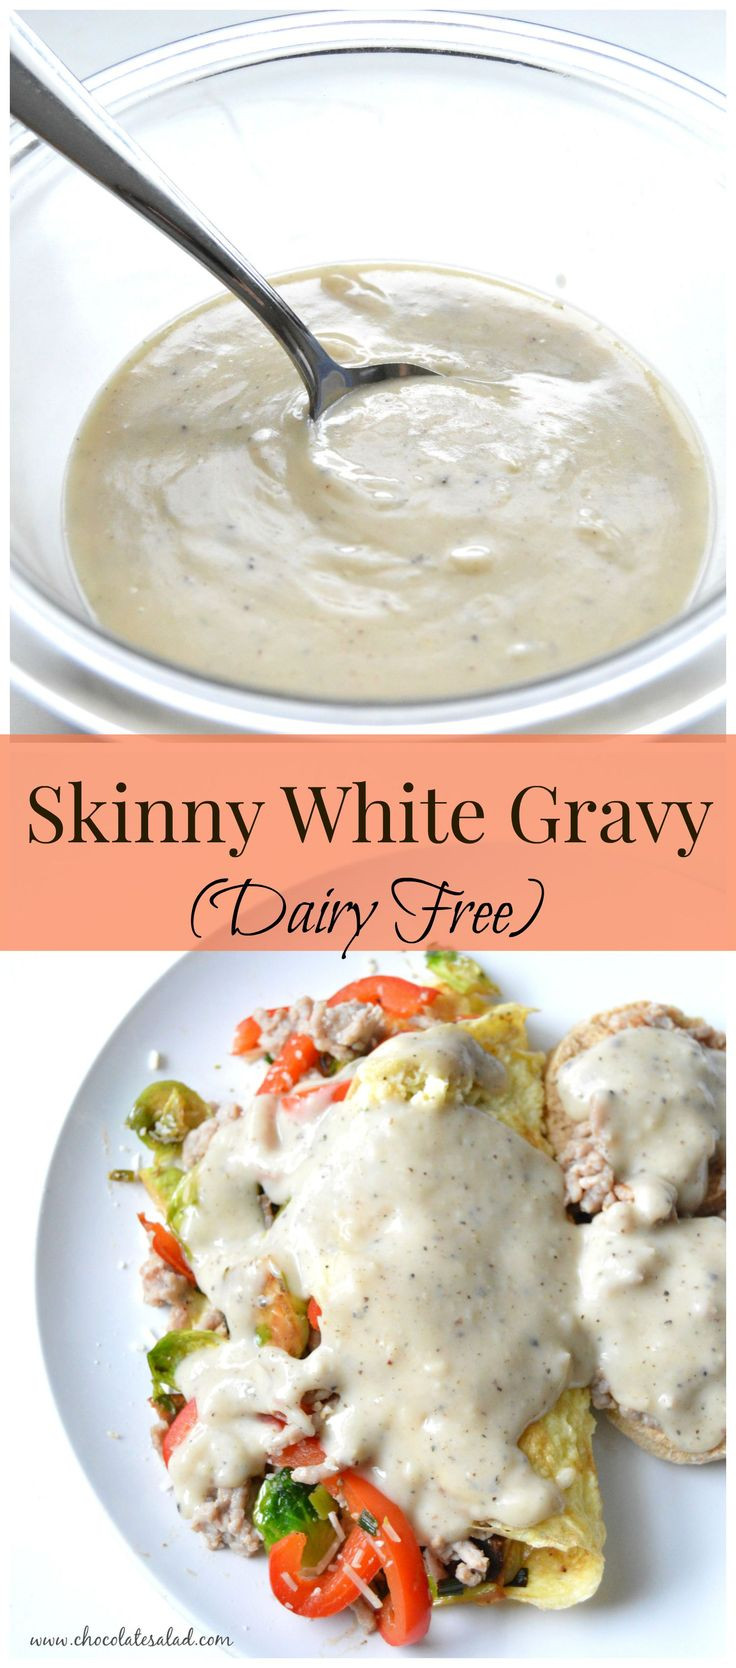 Dairy Queen Biscuits And Gravy
 Best 25 Dairy free gravy ideas on Pinterest